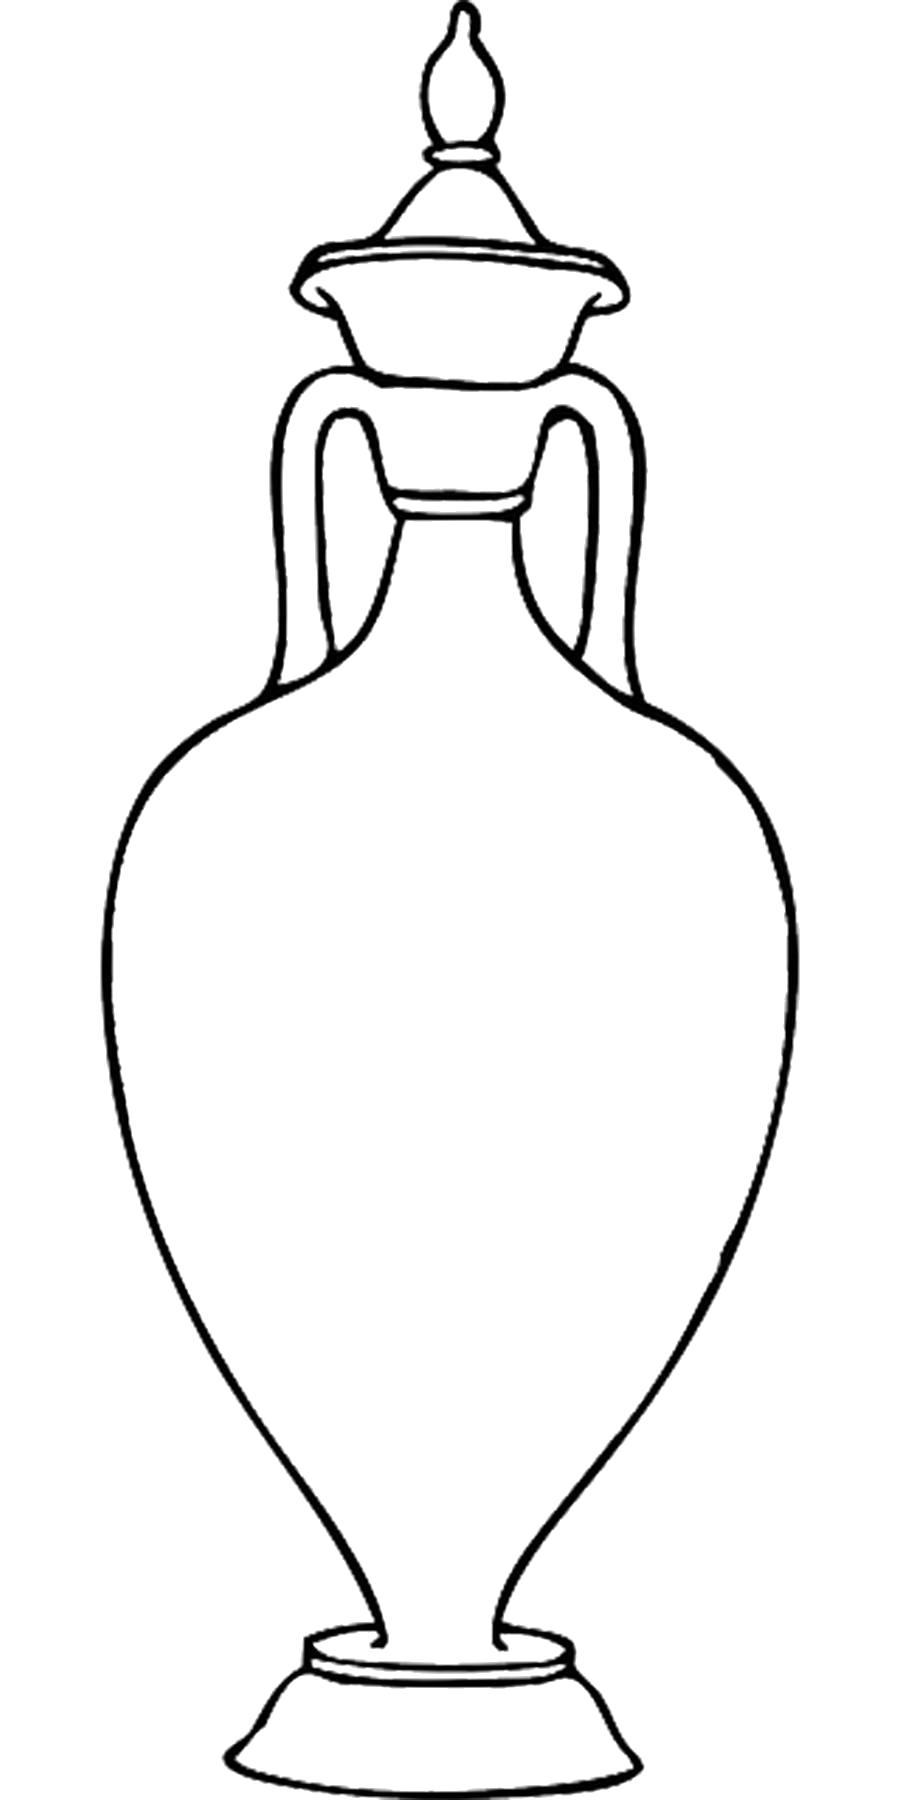 Раскраска  шаблон вазы ваза с крышкой контур для вырезания из бумаги. Скачать Шаблон.  Распечатать Шаблон